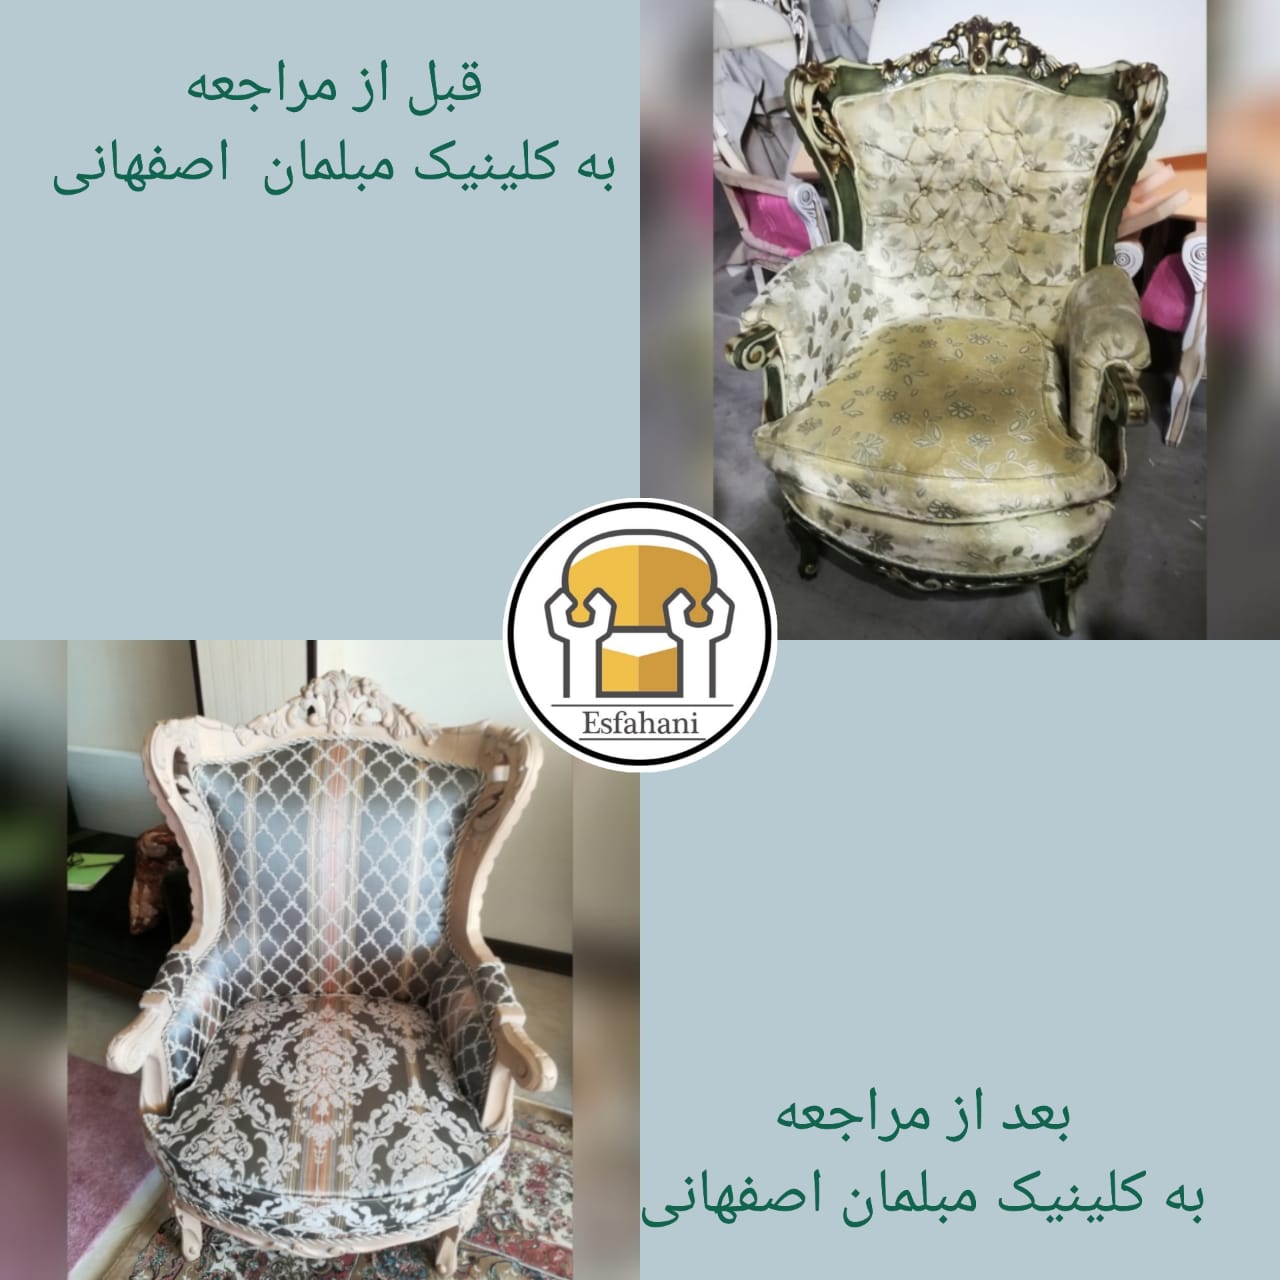 گالری مبل | تعمیر انواع مبلمان و دوخت انواع کاور در اصفهان با گروه تکا